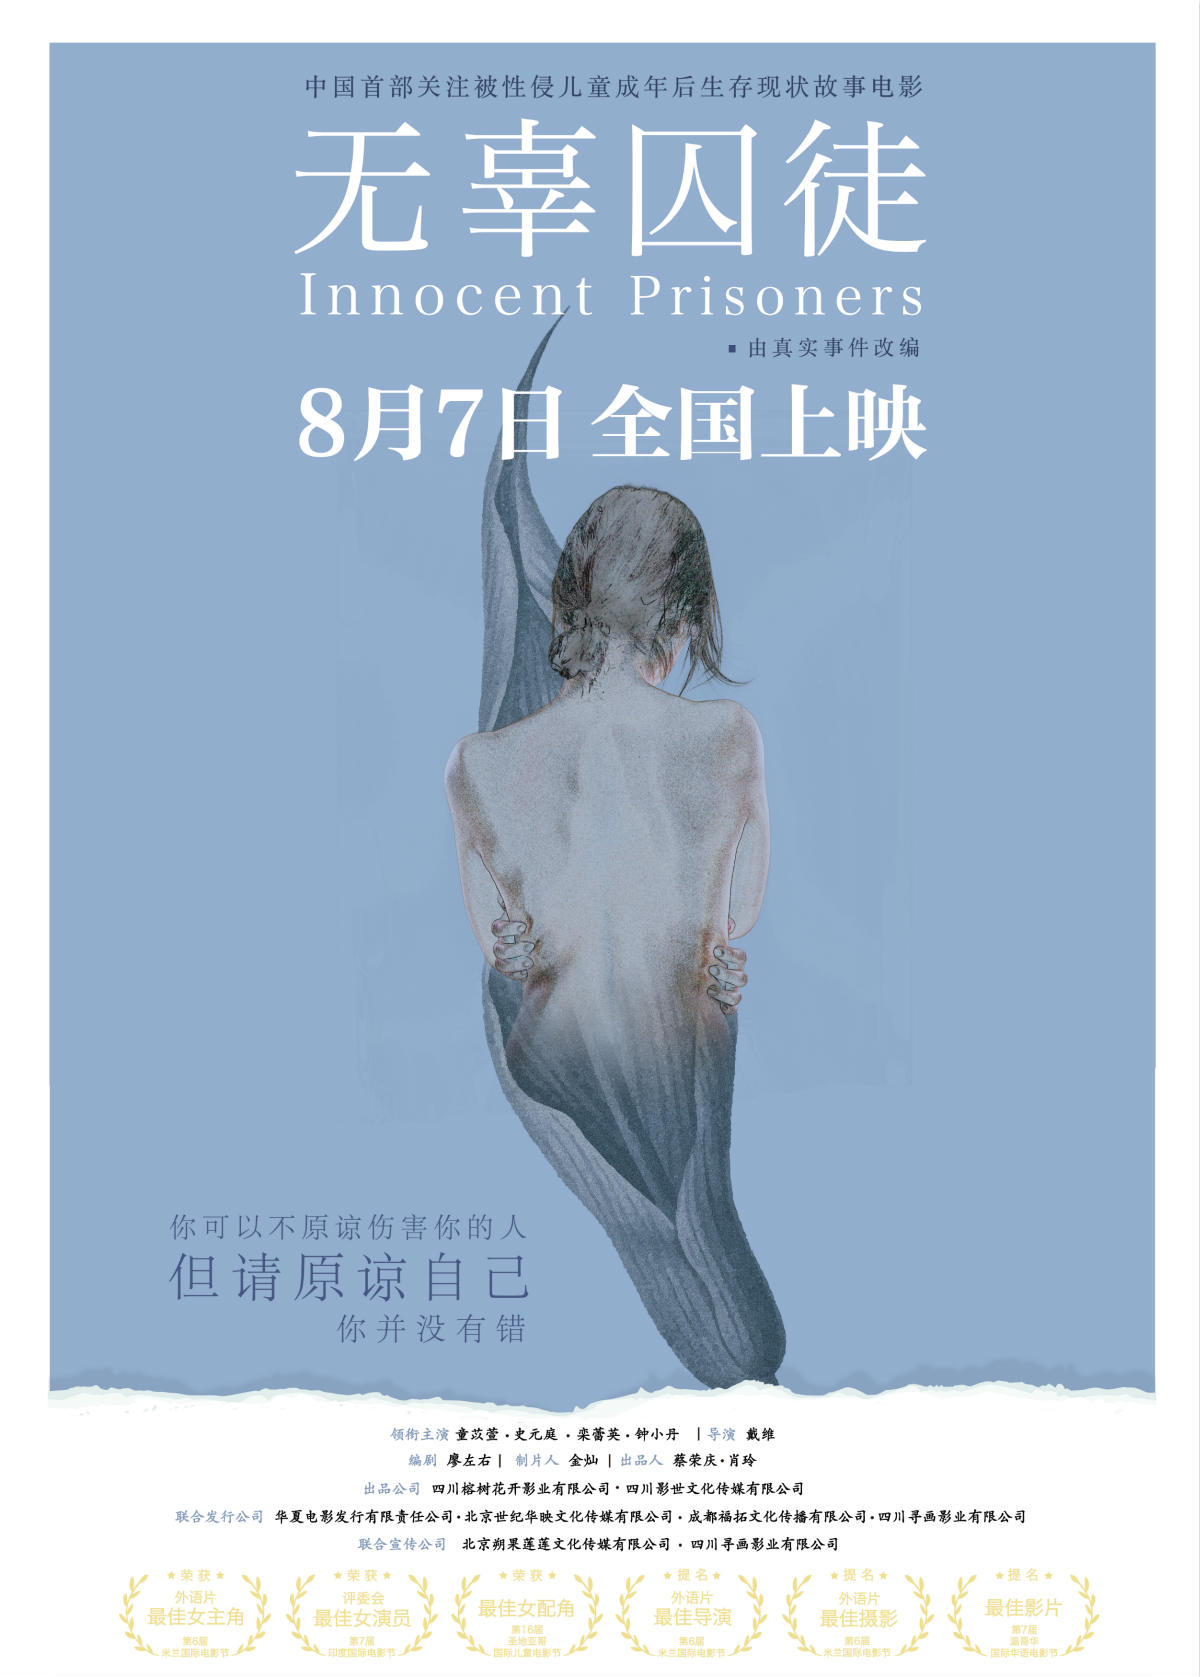 《无辜囚徒》手绘板定档海报（蓝色）